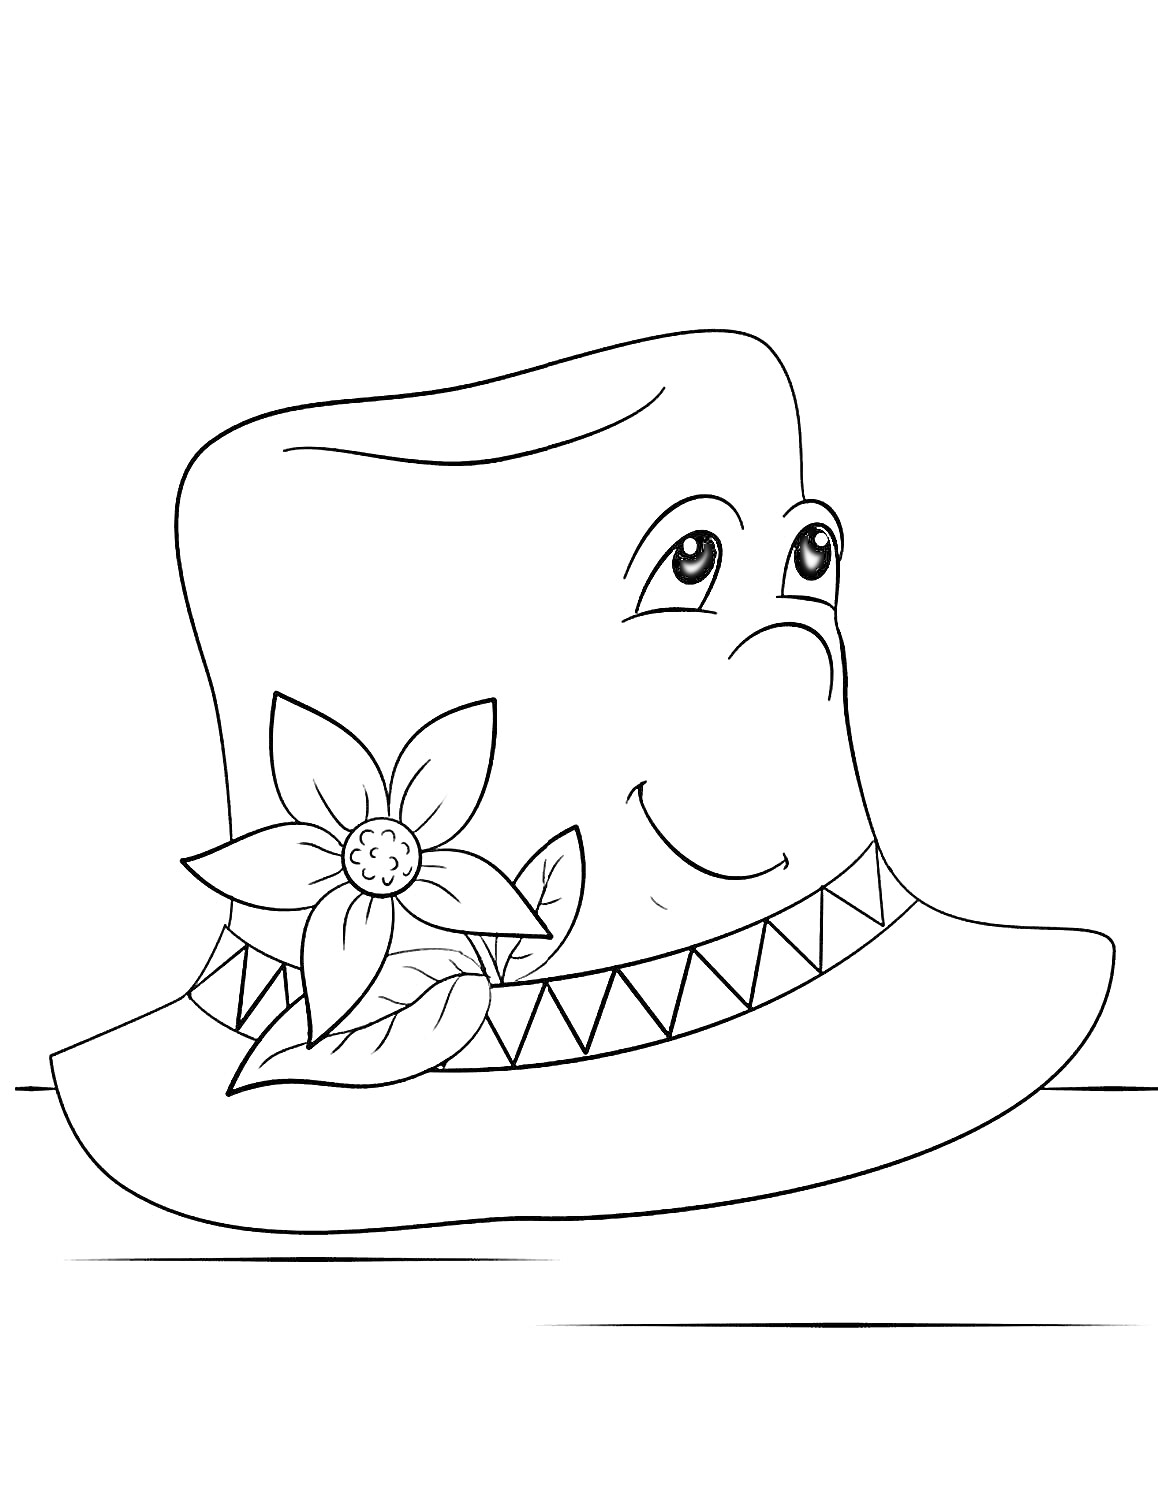 Раскраска Шляпа с лицом, украшенная цветком и геометрическим узором